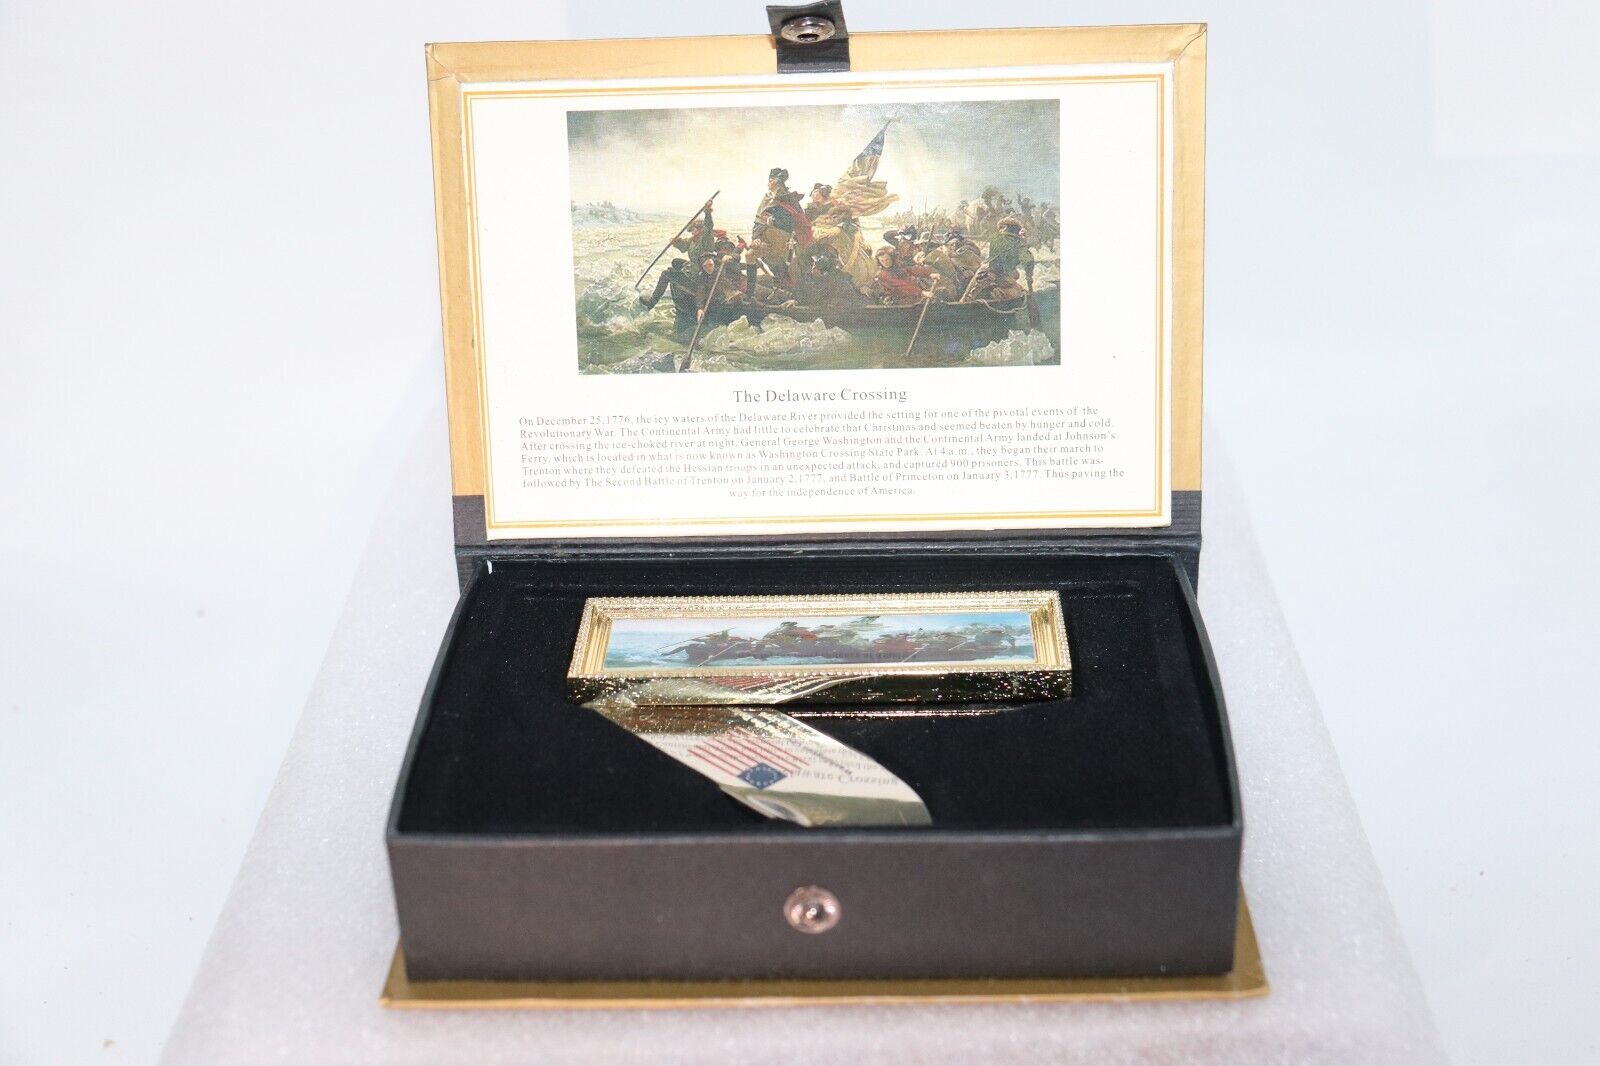 The Delaware Crossing Dec. 25, 1776 Commemorative Pocket Knife in Book Box